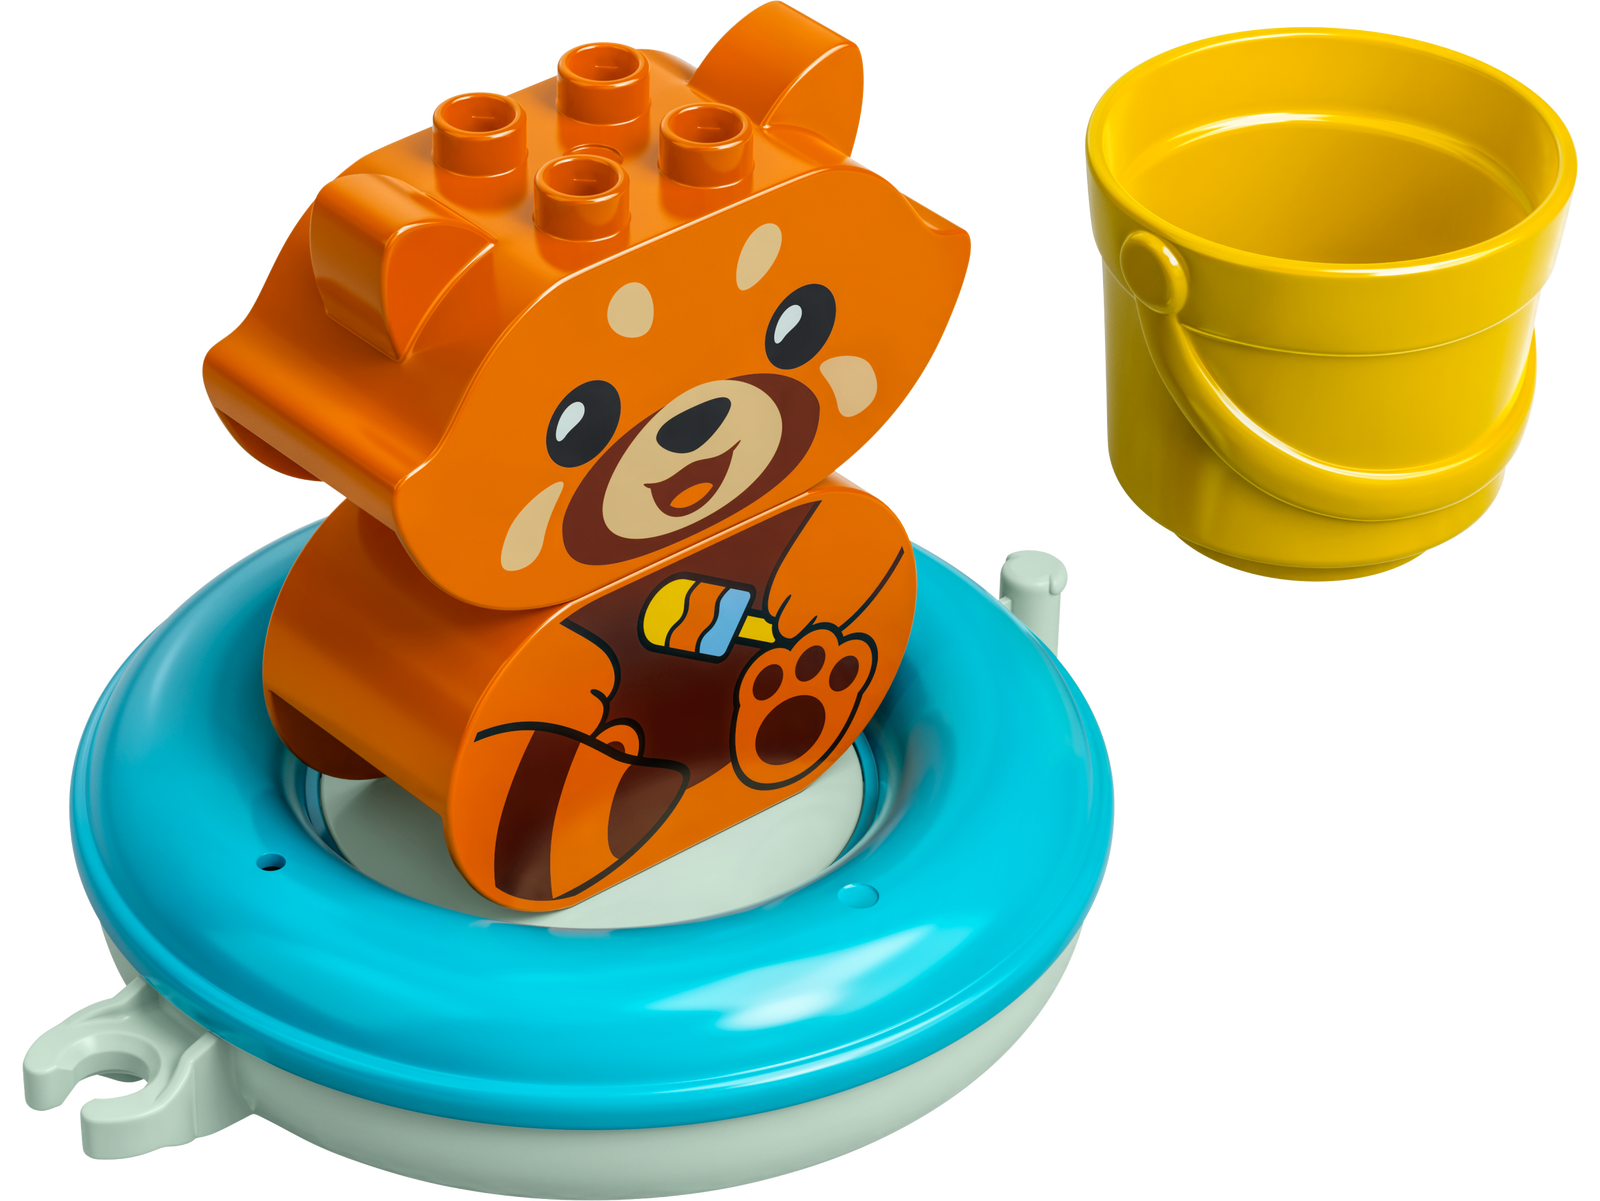 Lego Duplo Bath Time Fun 10964 - Albagame